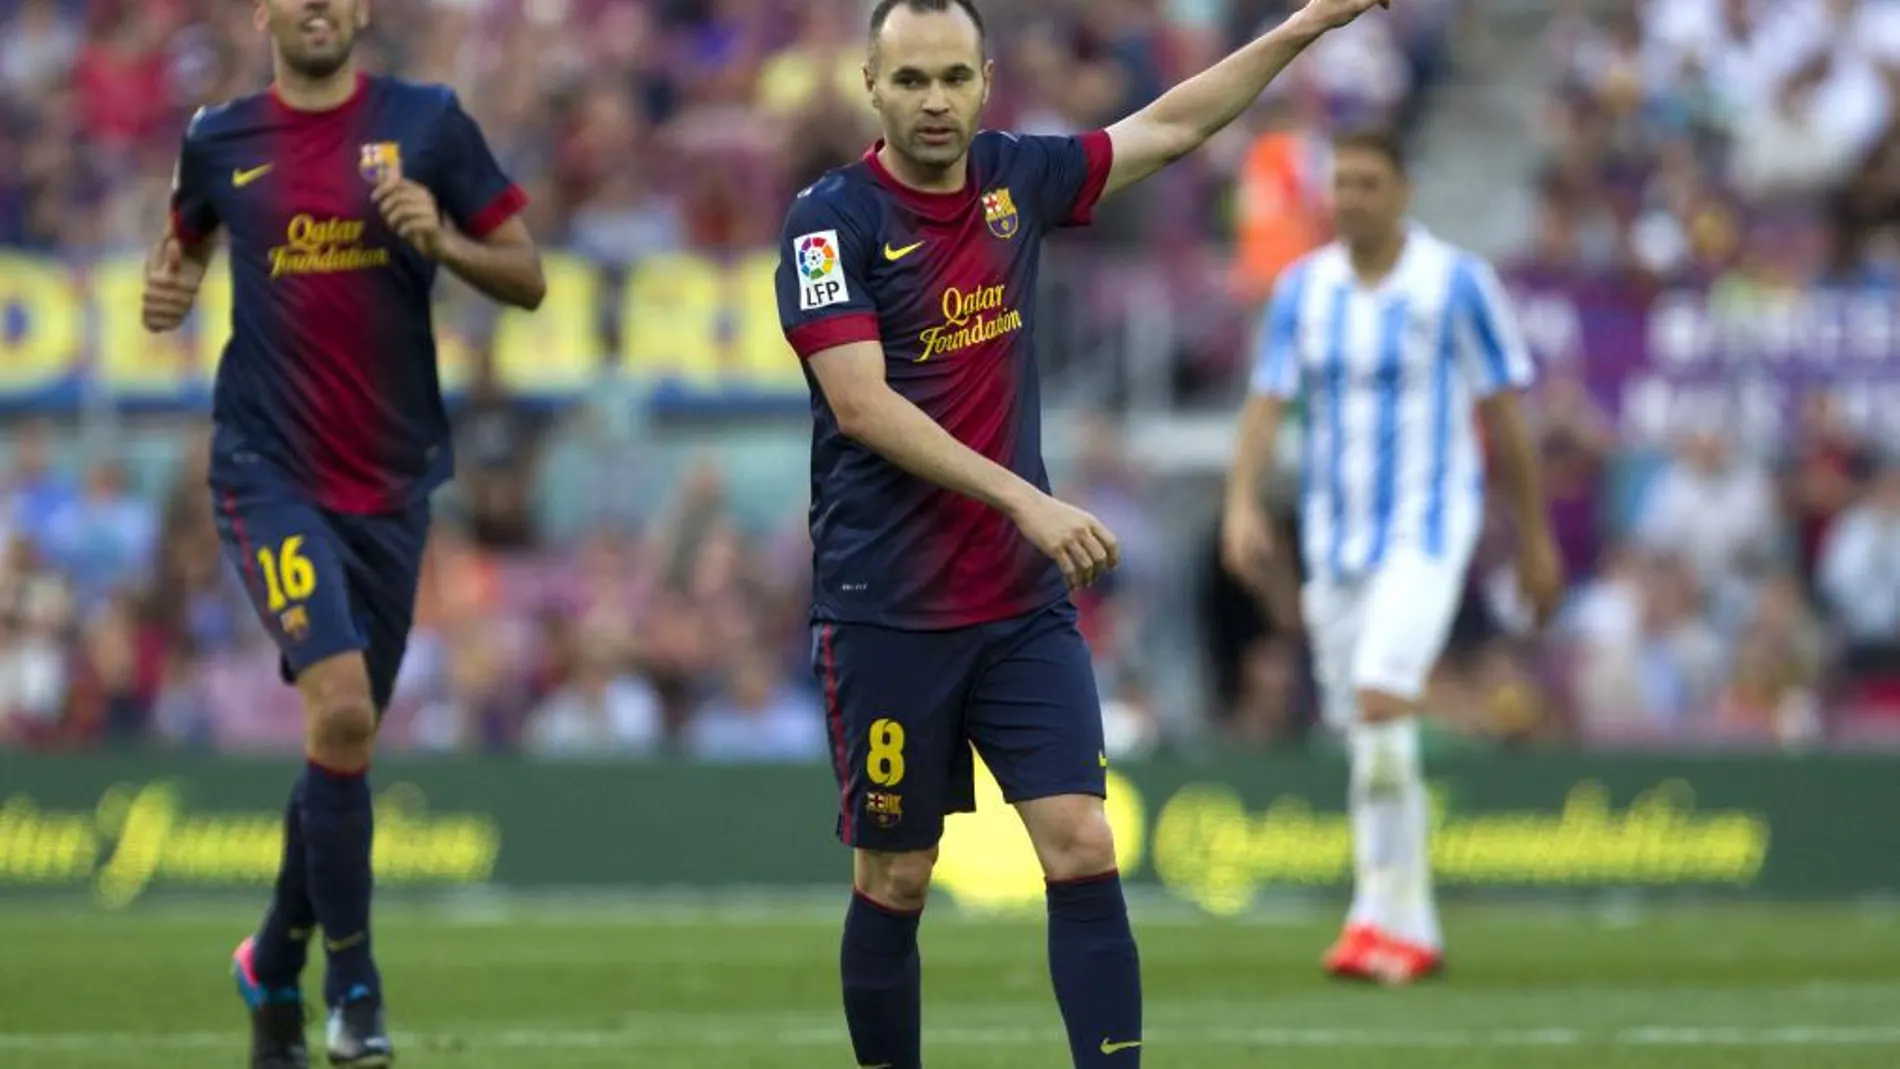 El centrocampista del Fútbol Club Barcelona Andrés Iniesta celebra el gol que ha marcado al Málaga, durante el partido de la última jornada de Liga de Primera División disputado esta tarde en el Camp Nou.